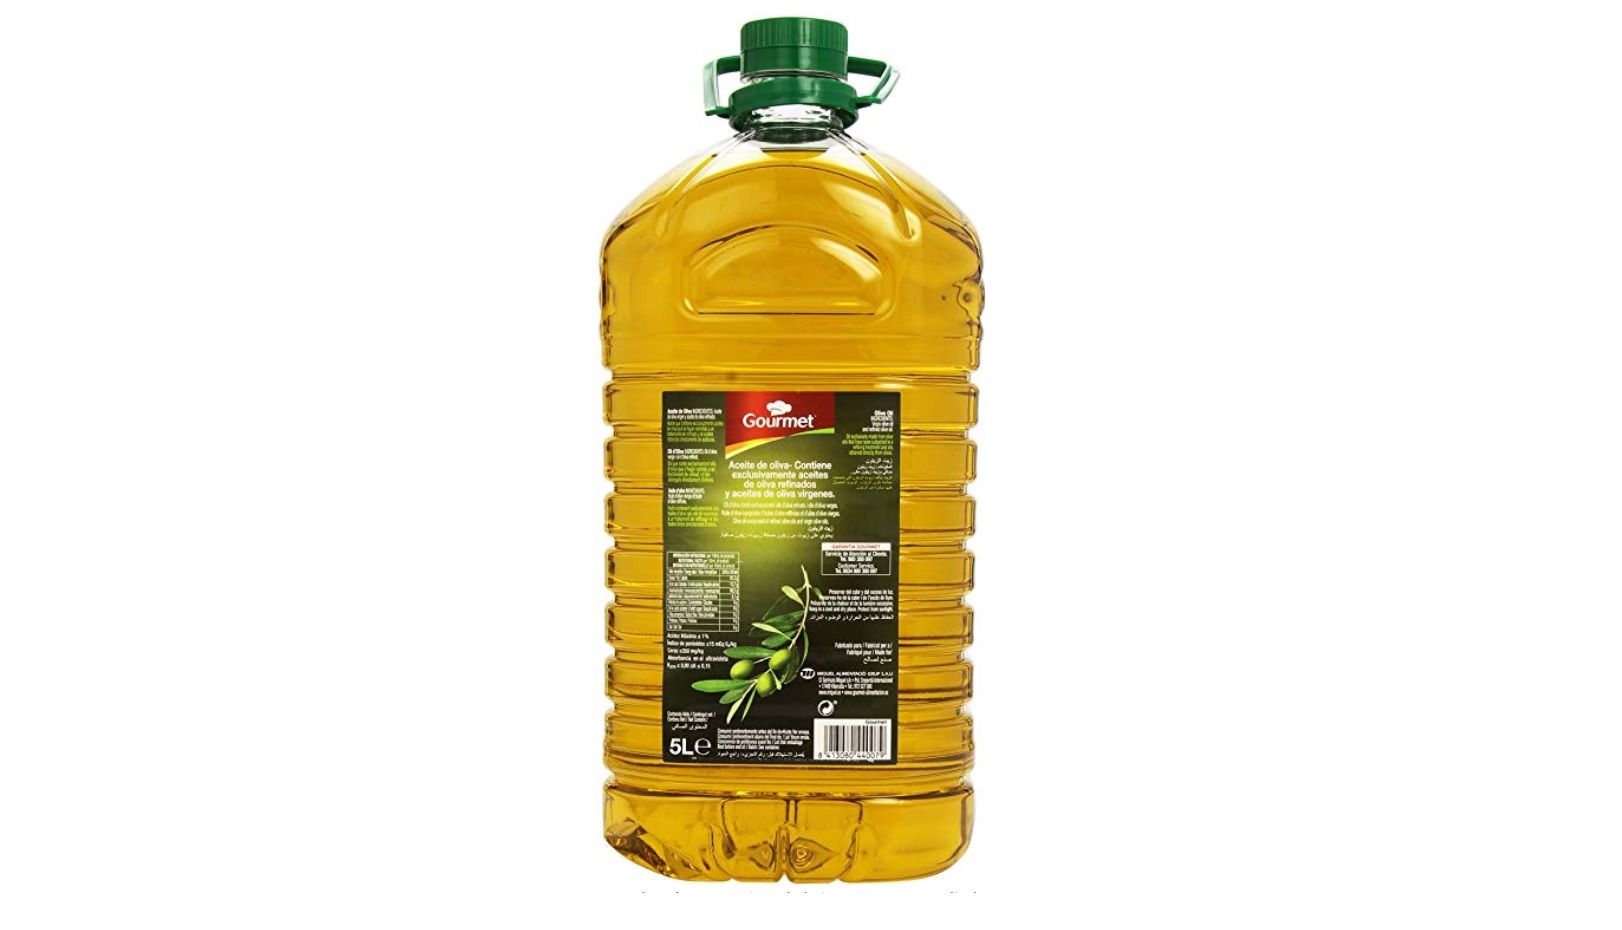 ¡Chollo! 5 litros de aceite de oliva Gourmet por sólo 13,65€ (antes 25,31€)